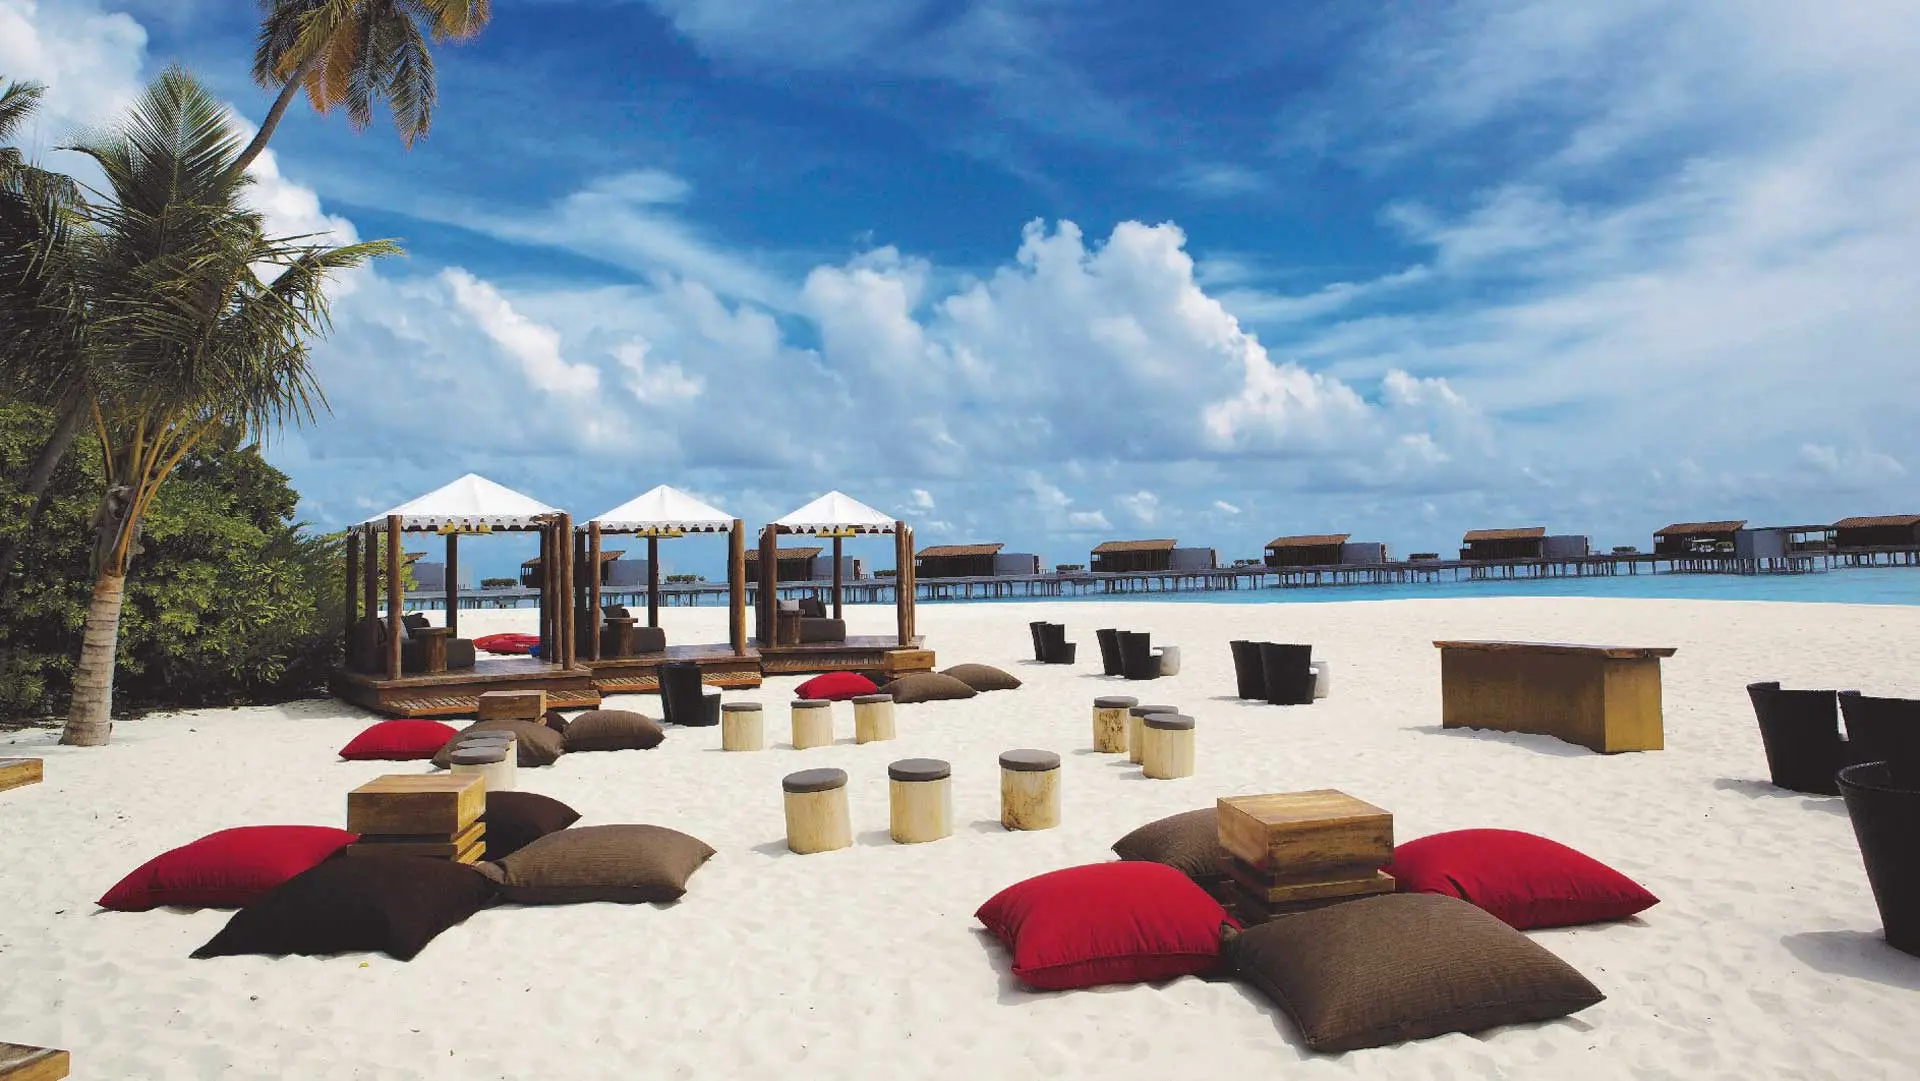 Hotel review Style' - Park Hyatt Maldives Hadahaa - 3